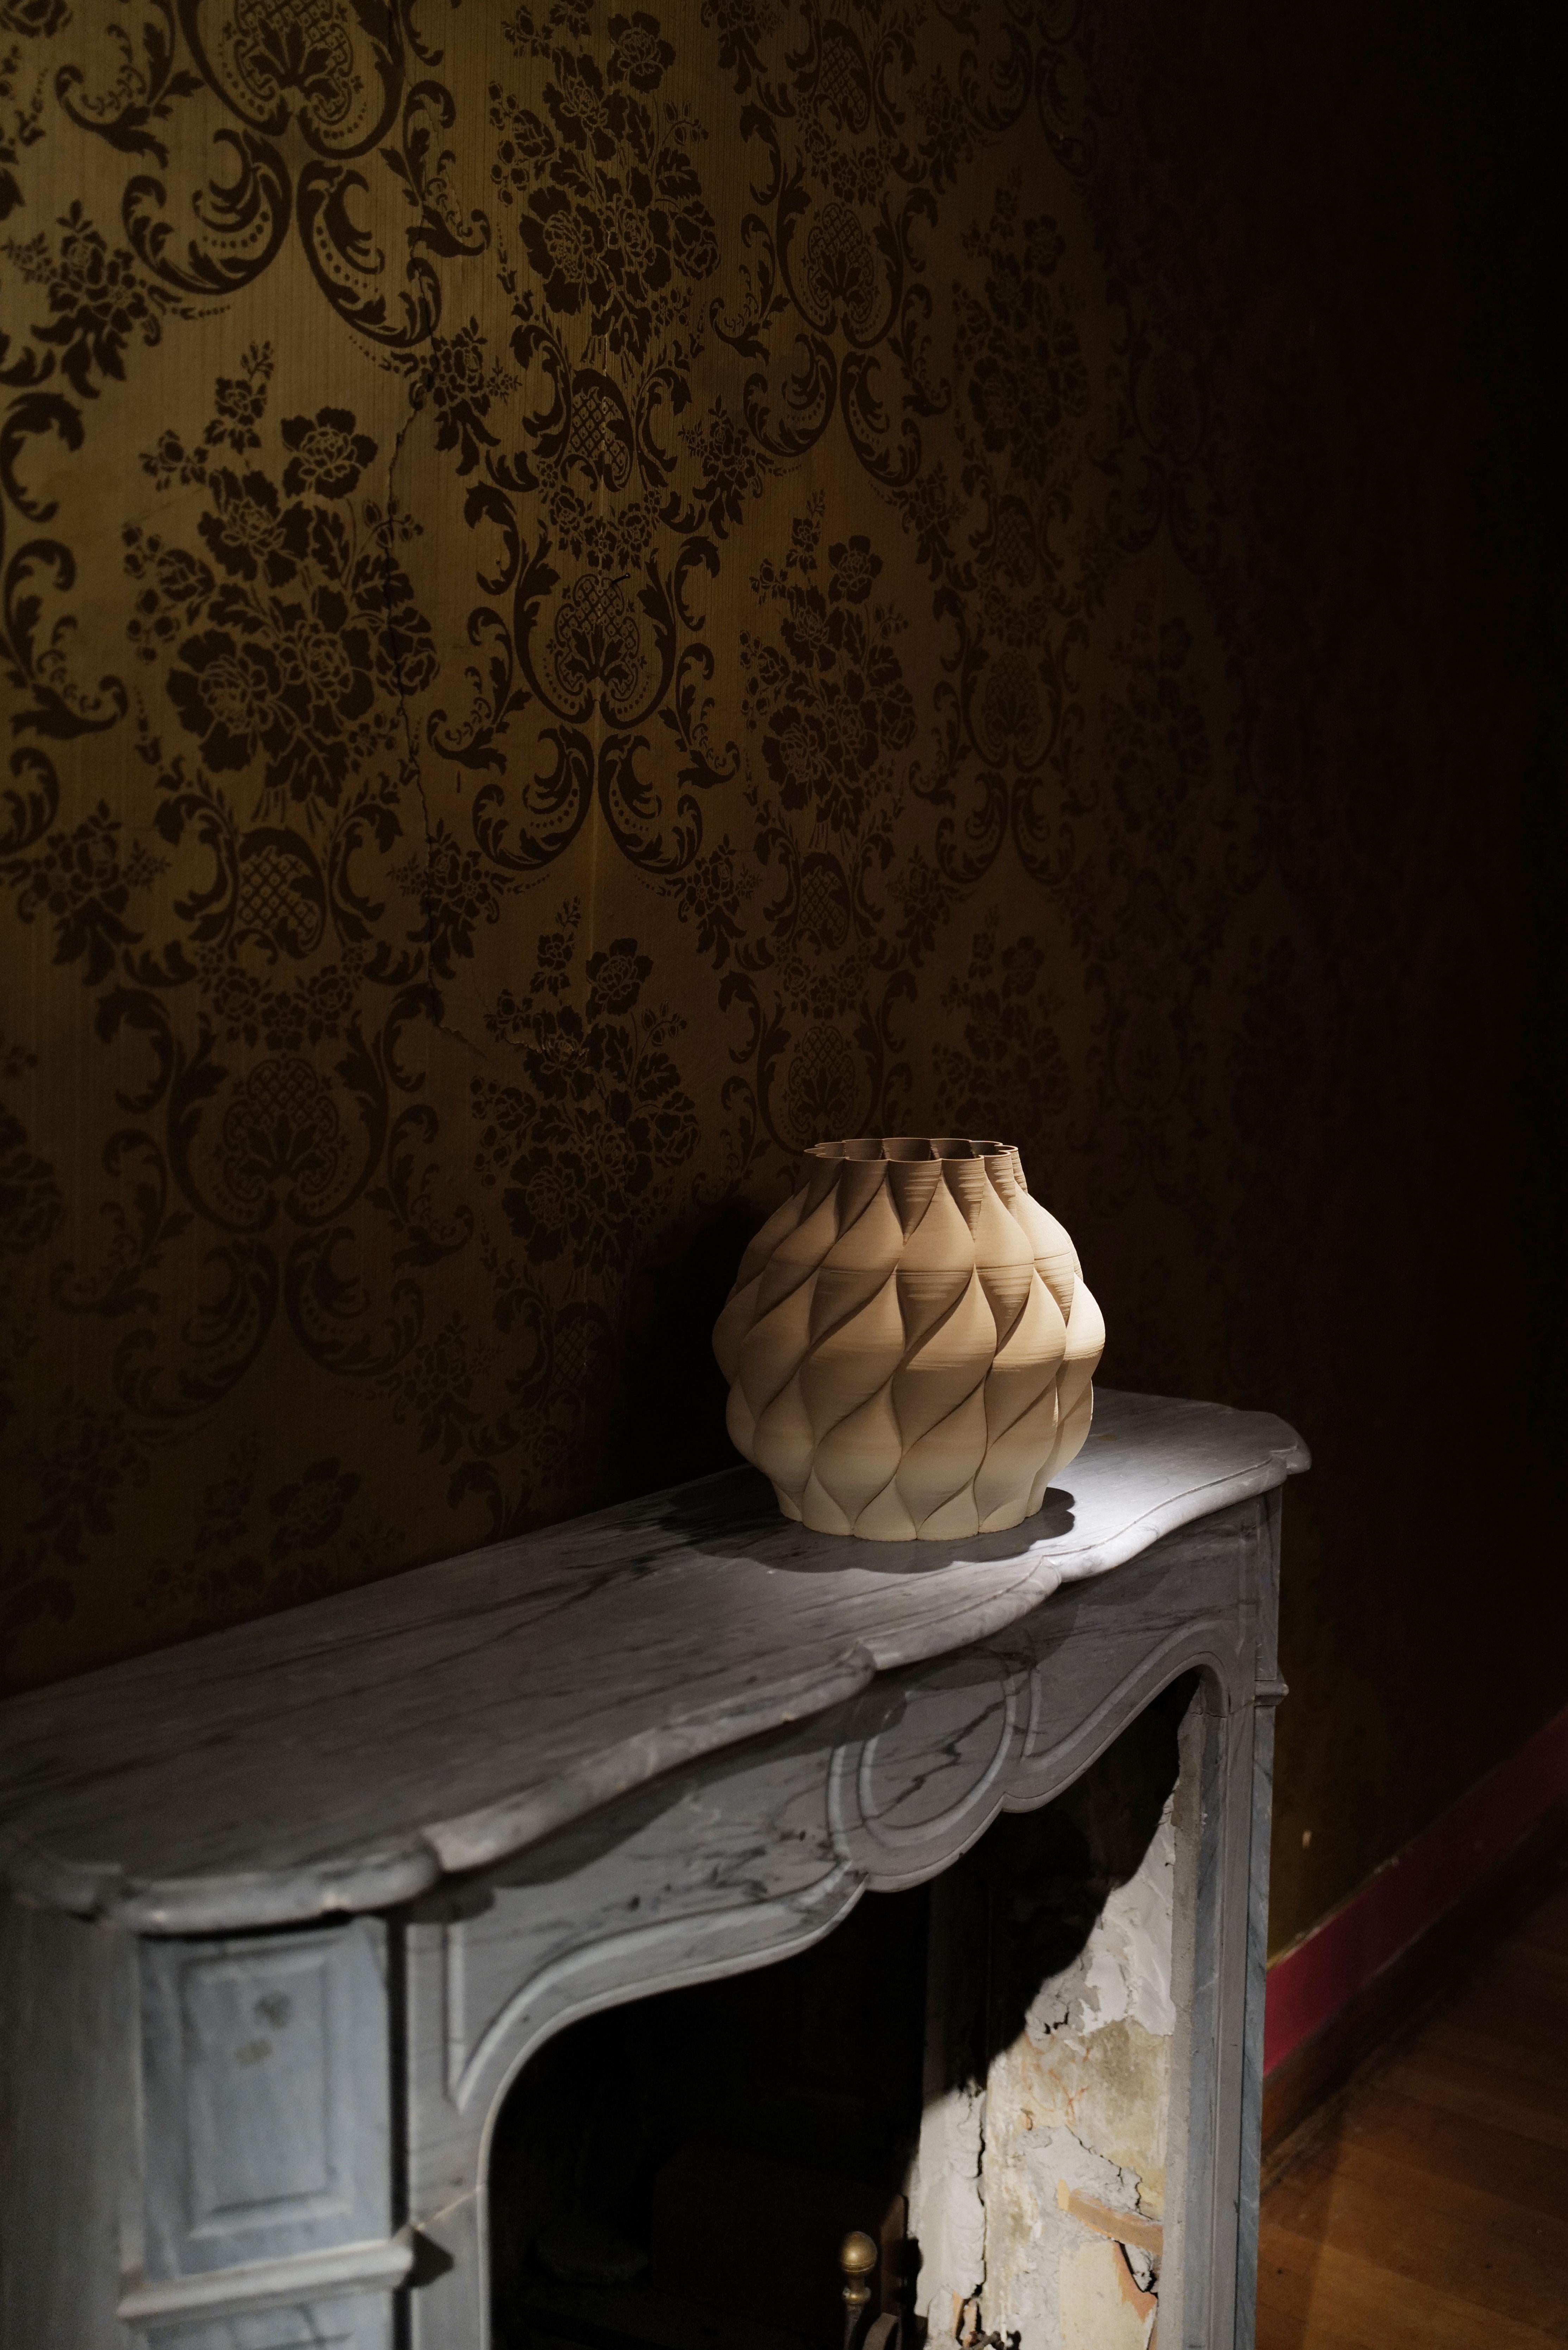 Le vase Mumbai fait partie de la collection Mitti Vases, présentée lors de l'édition 2021 de la Milan Design Week Fuorisalone et conçue après un voyage en Inde. 
La collection explore différentes palettes et surfaces en utilisant du grès non fini